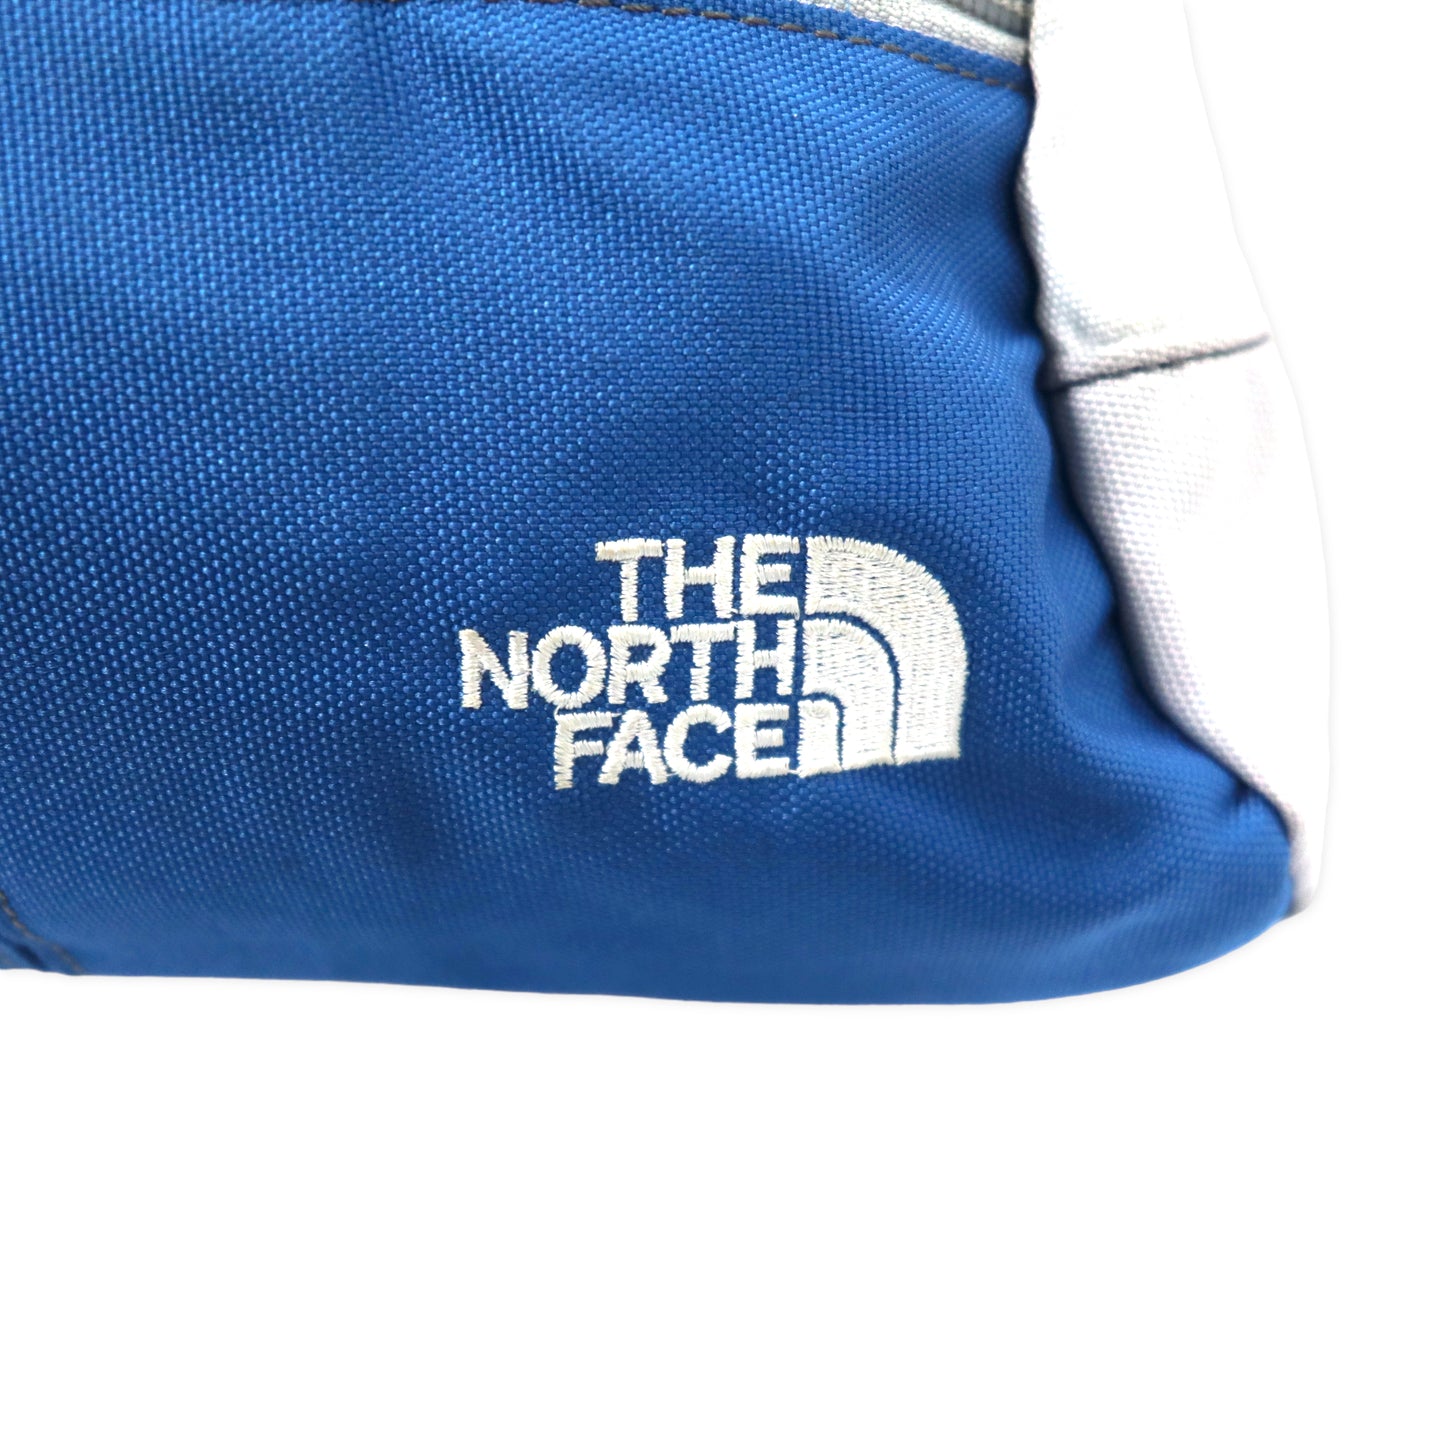 THE NORTH FACE ボディーバッグ ウエストポーチ ブルー ポリエステル ロゴ刺繍